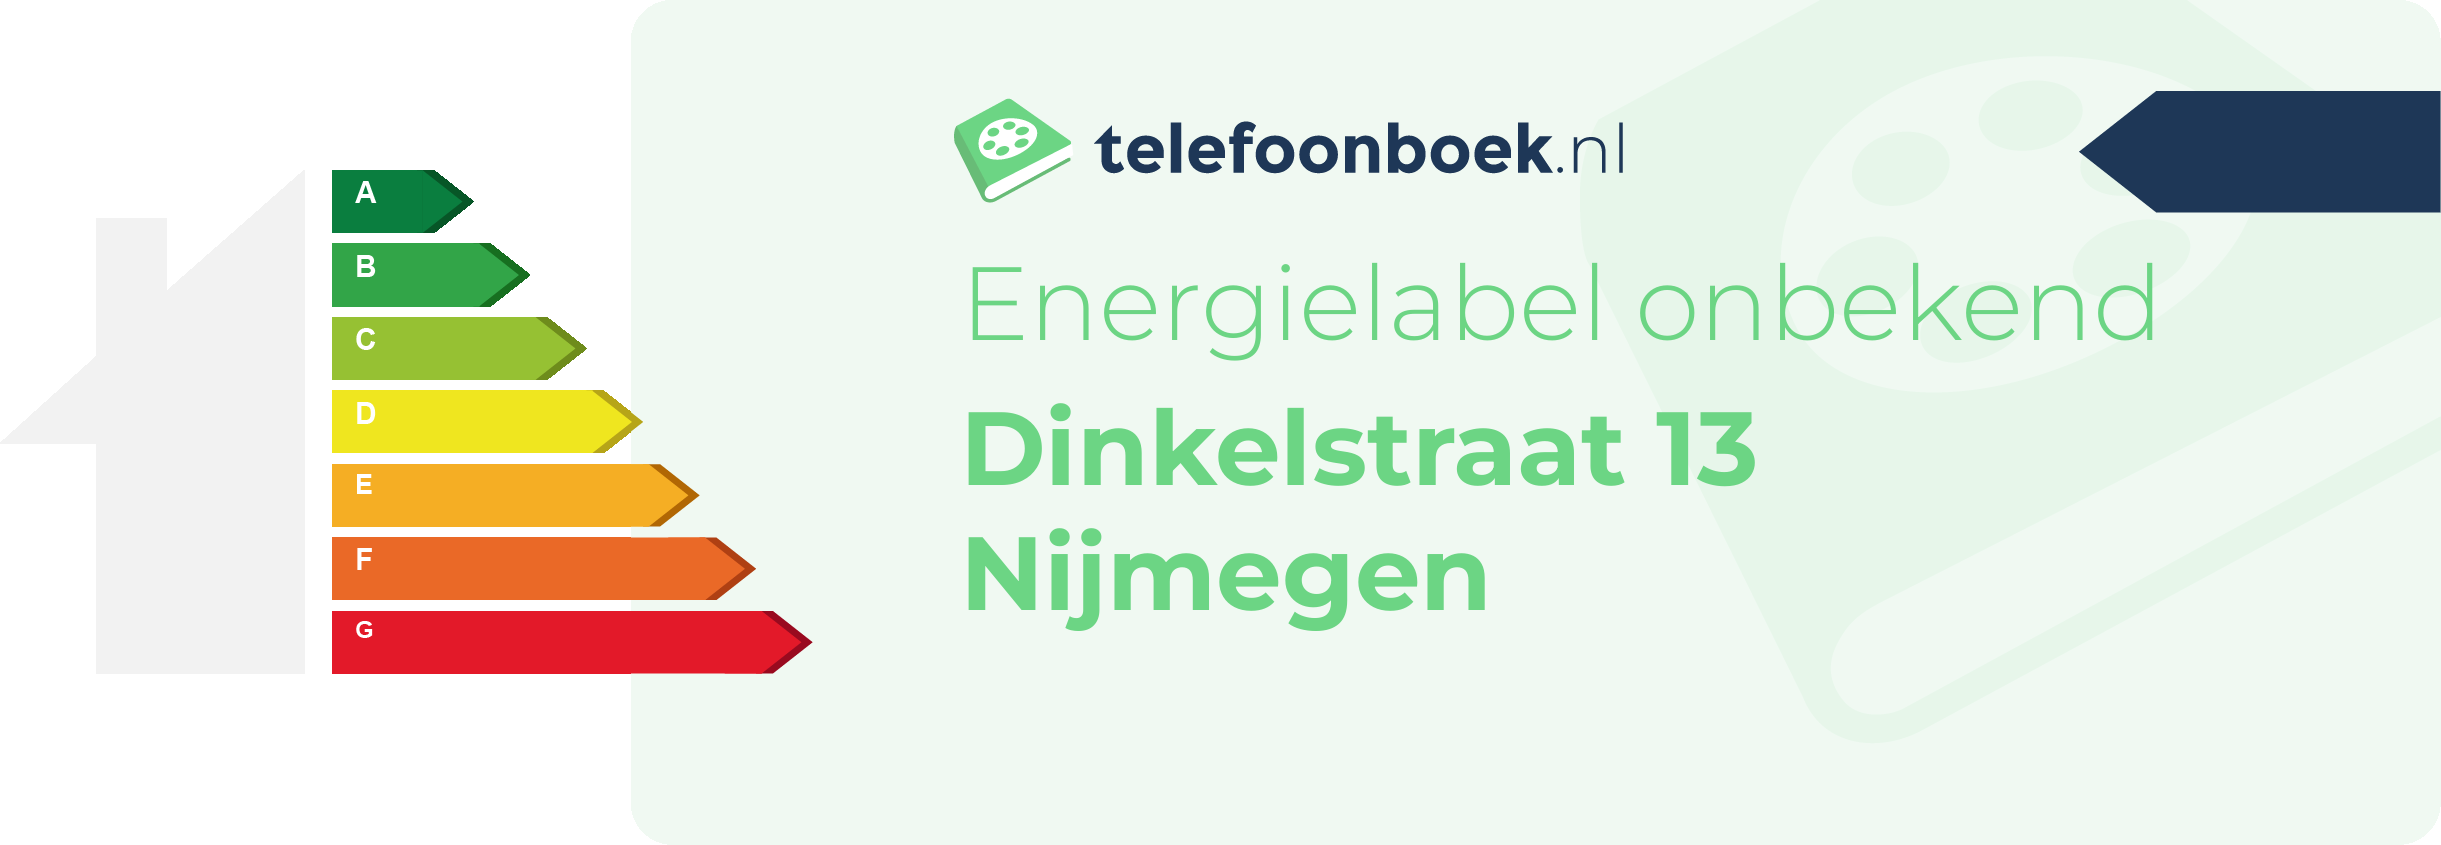 Energielabel Dinkelstraat 13 Nijmegen